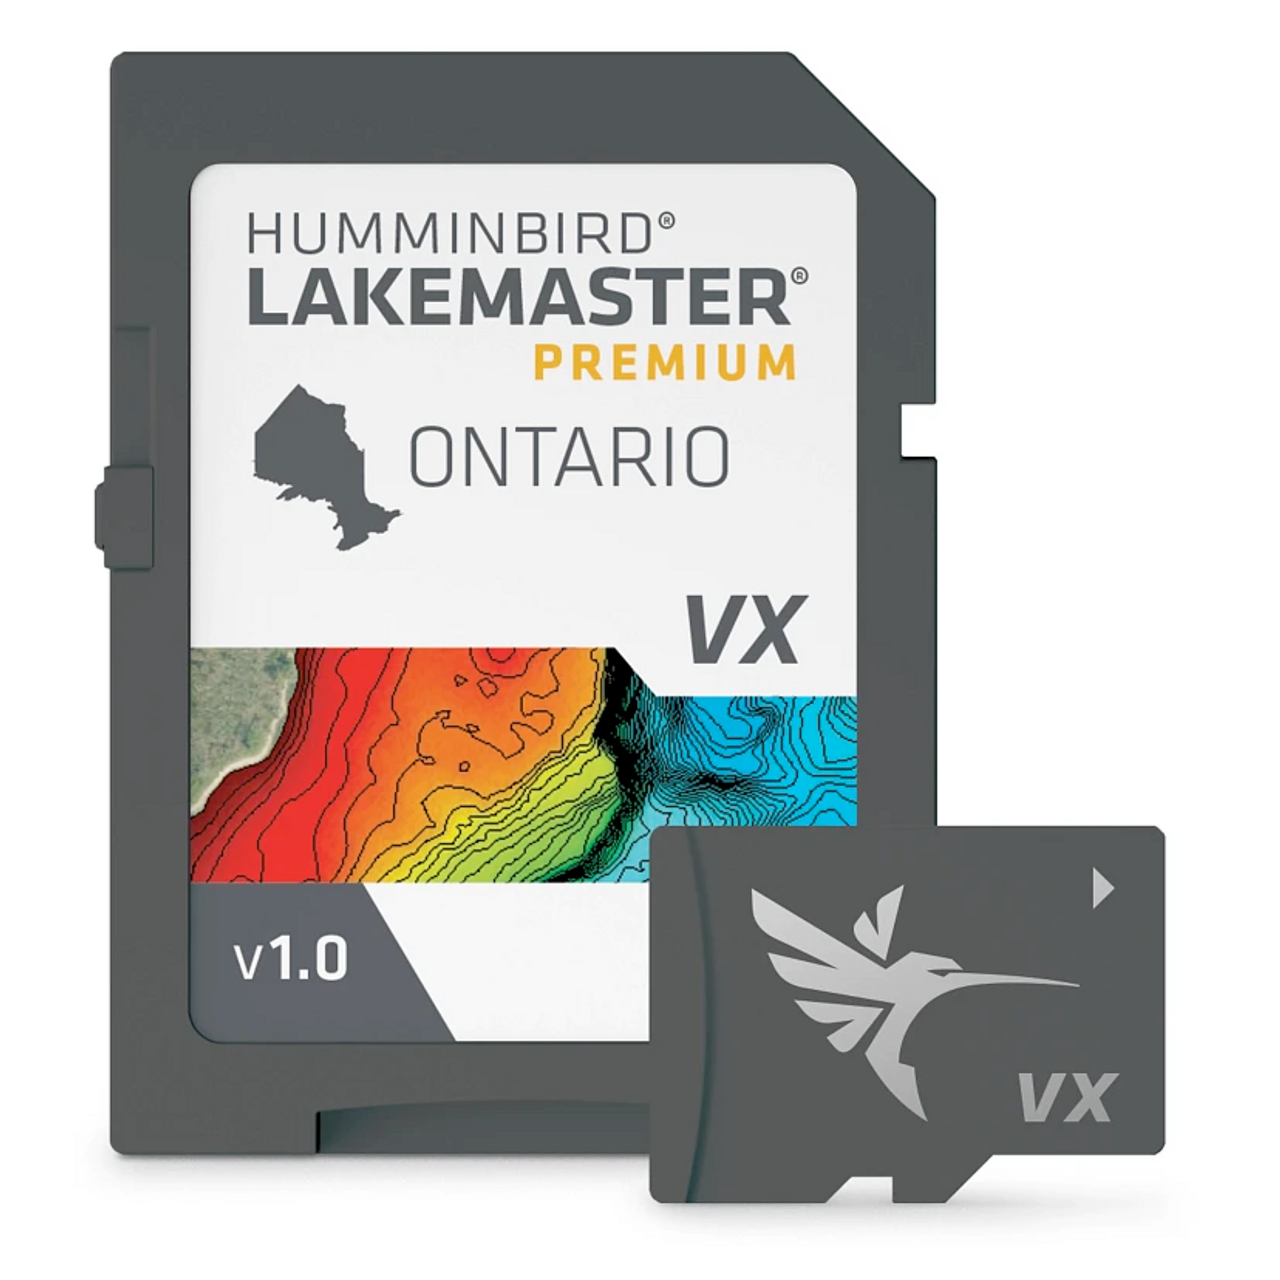 Humminbird Lakemaster Premium Ontario